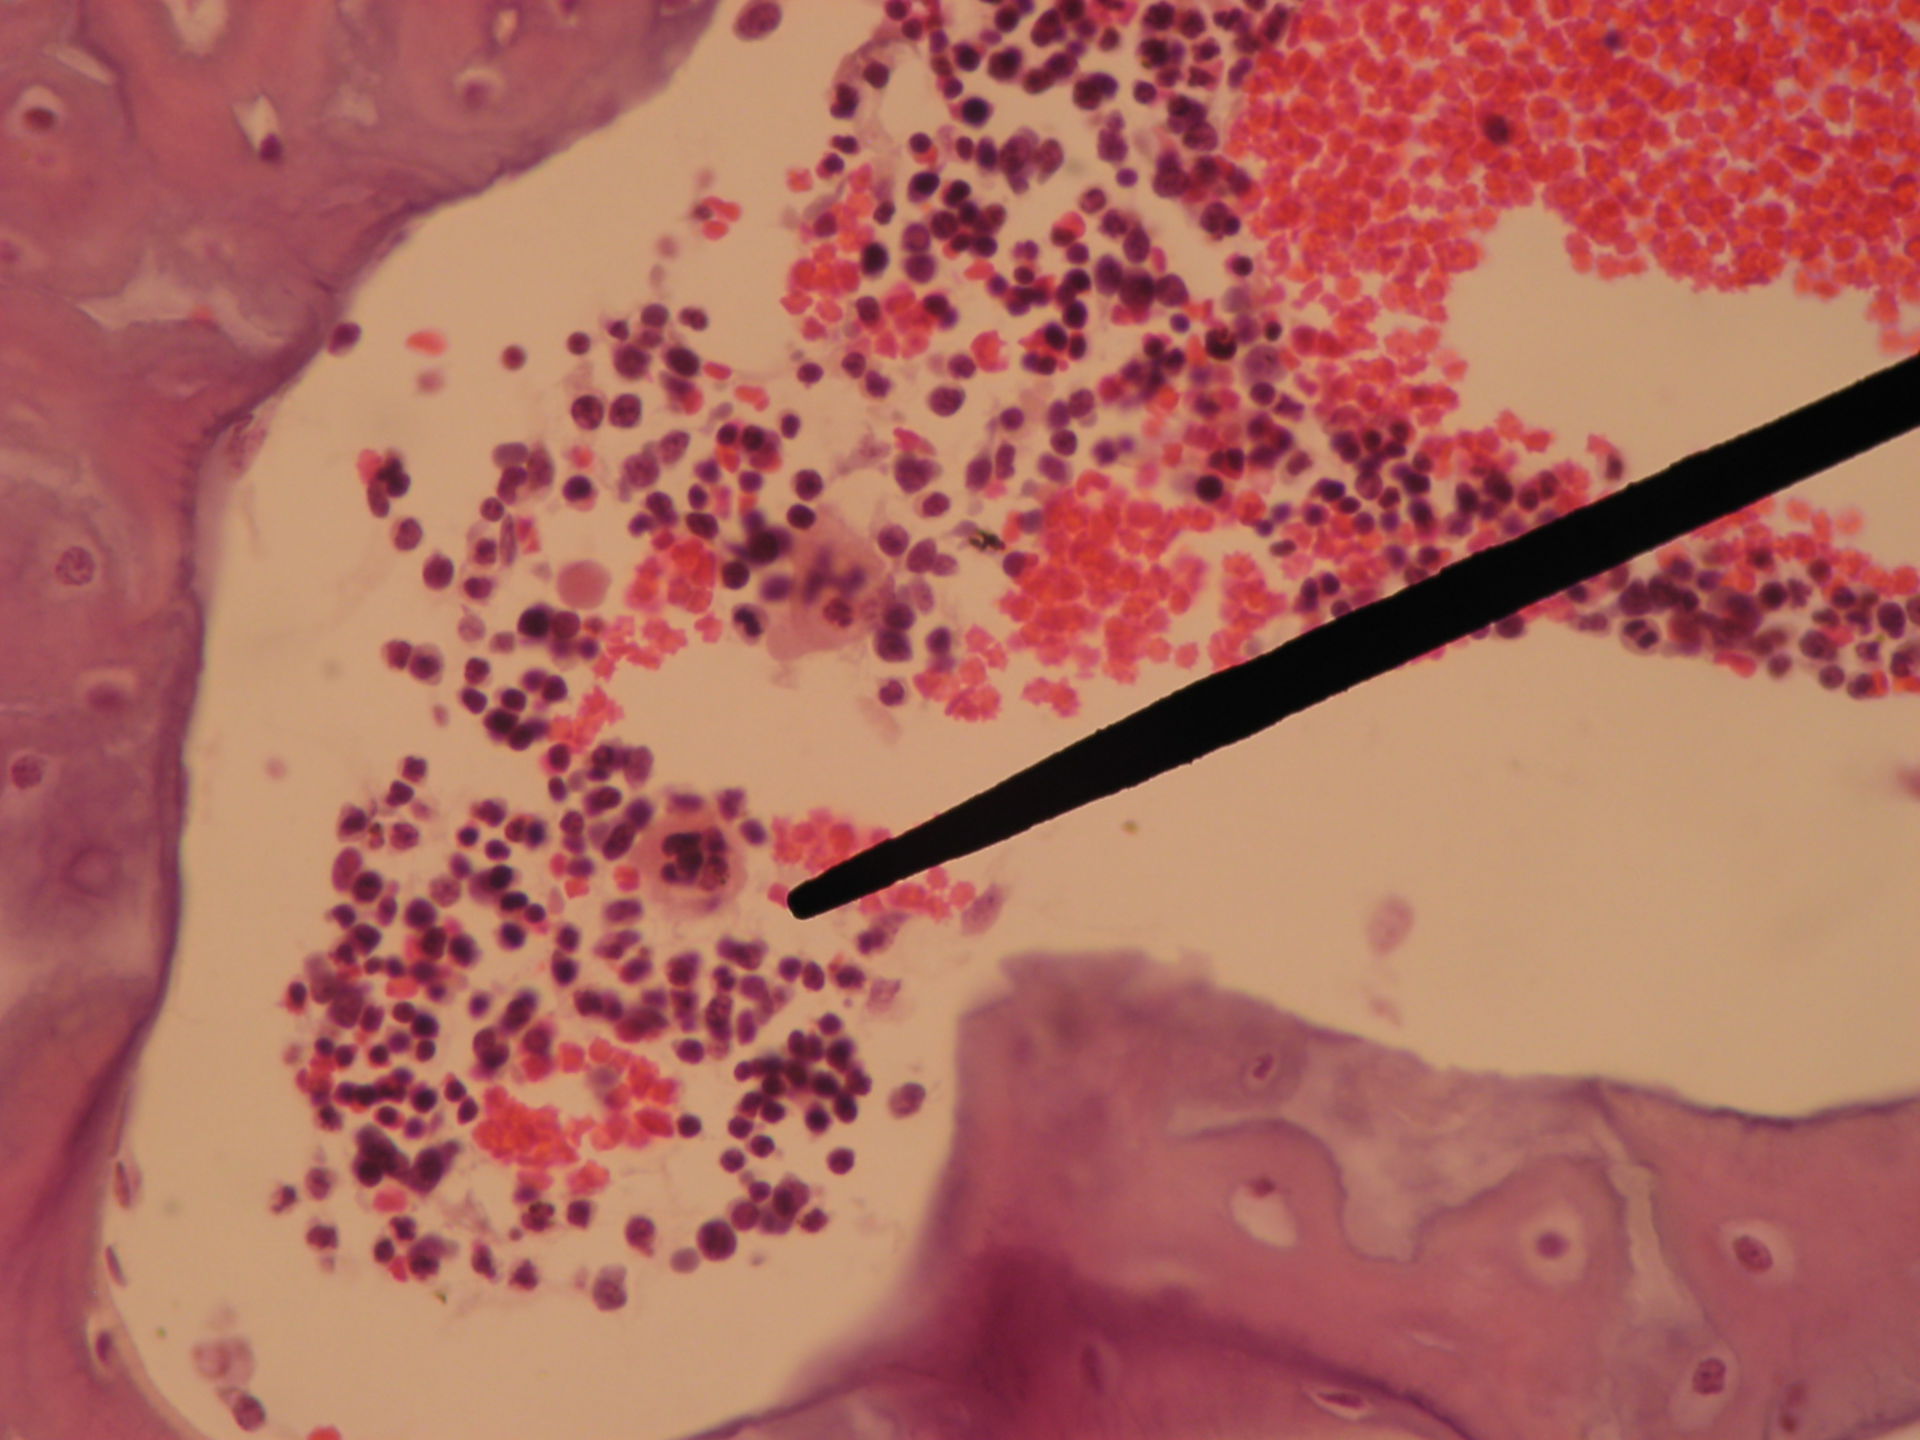 Rotes Knochenmark eines Schweinefetus (7) - Megakaryozyt